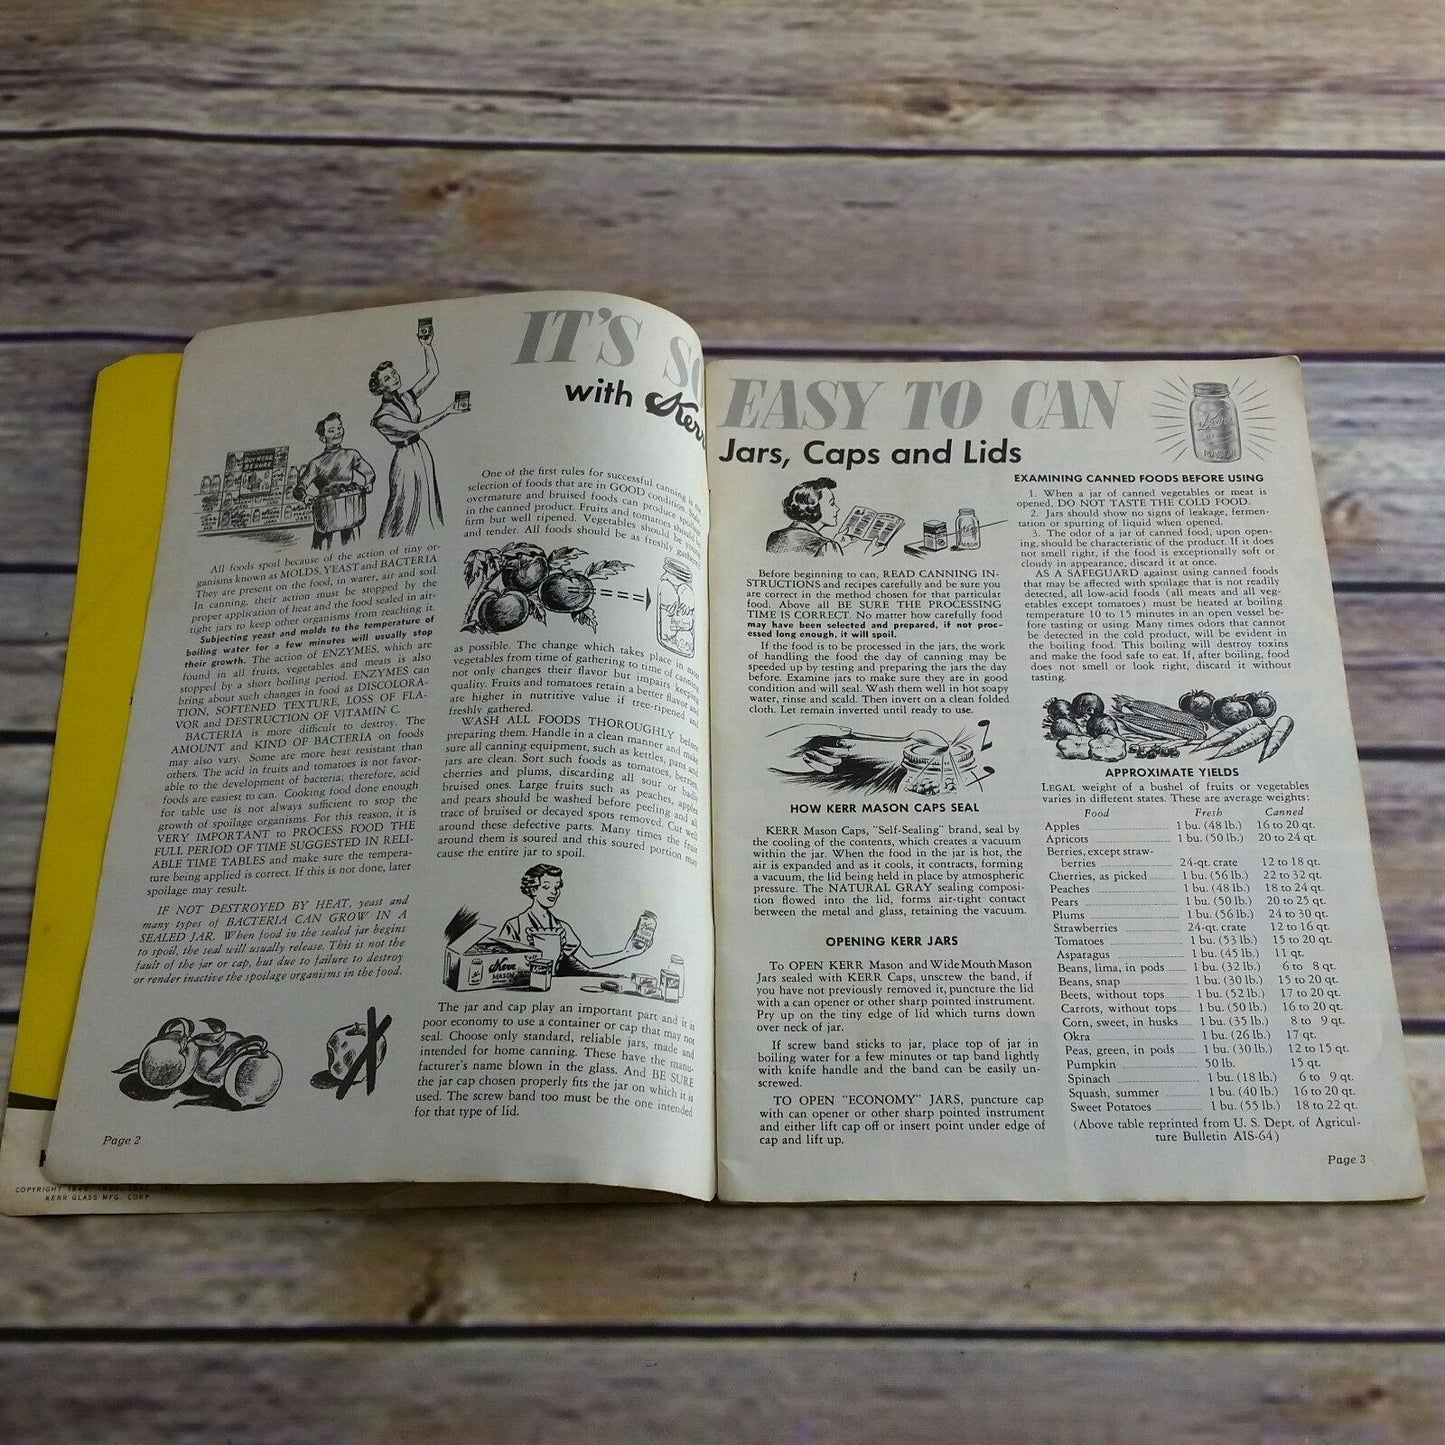 Vintage Kerr Home Canning Book Cookbook Recipes 1953 Booklet Food Preservation Promo Ads Advertising